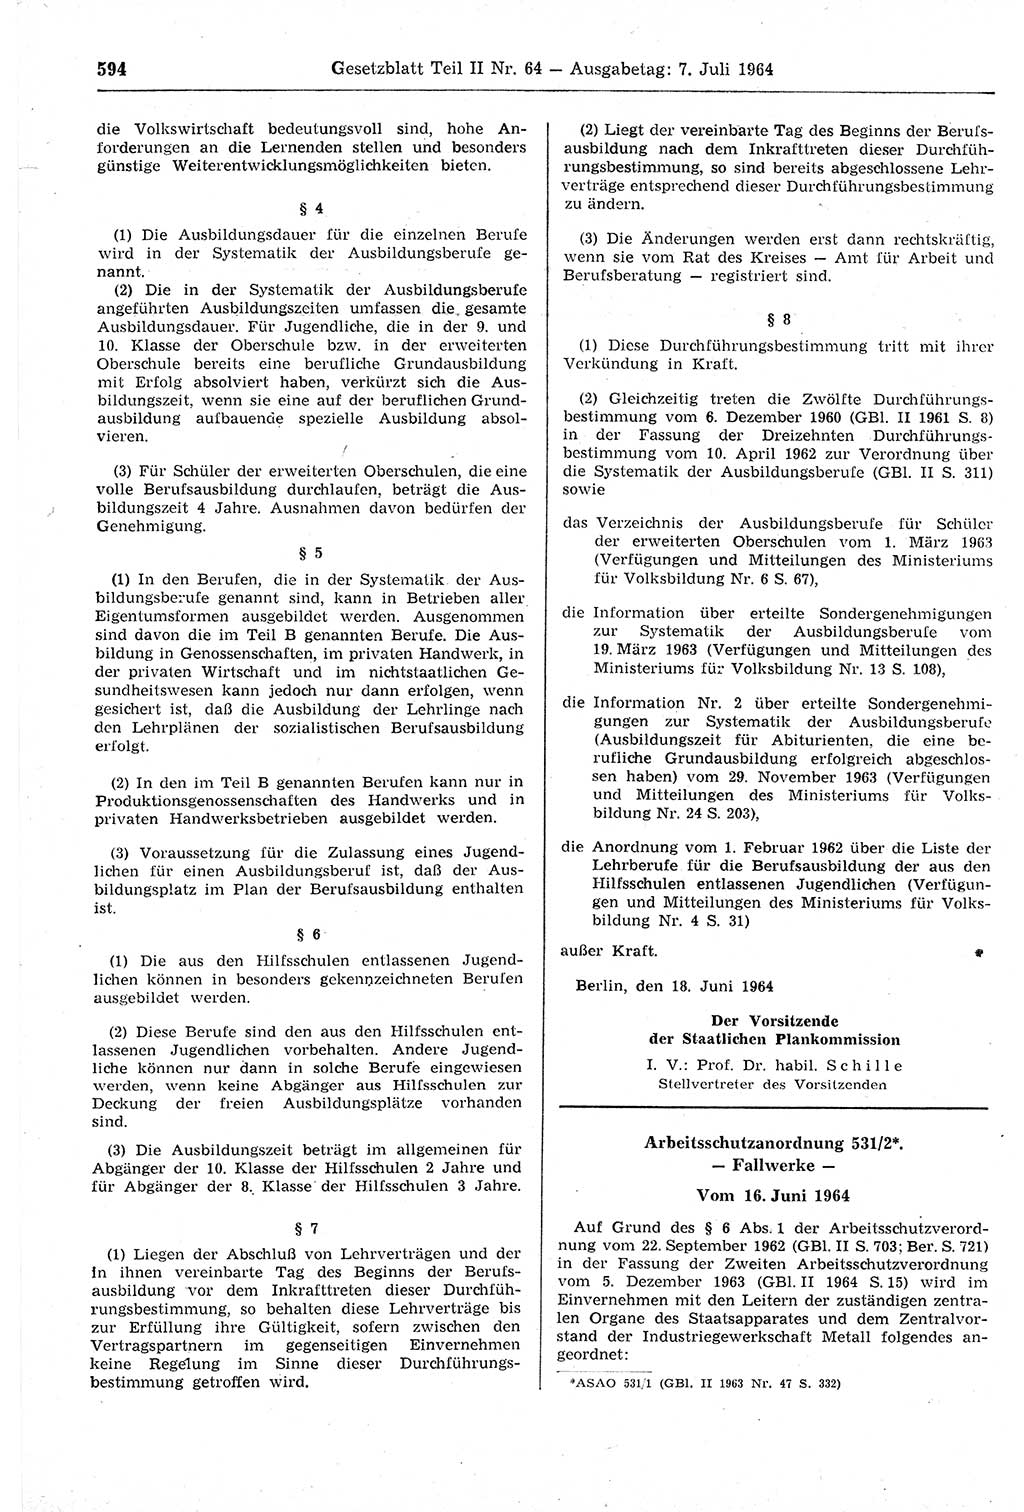 Gesetzblatt (GBl.) der Deutschen Demokratischen Republik (DDR) Teil ⅠⅠ 1964, Seite 594 (GBl. DDR ⅠⅠ 1964, S. 594)